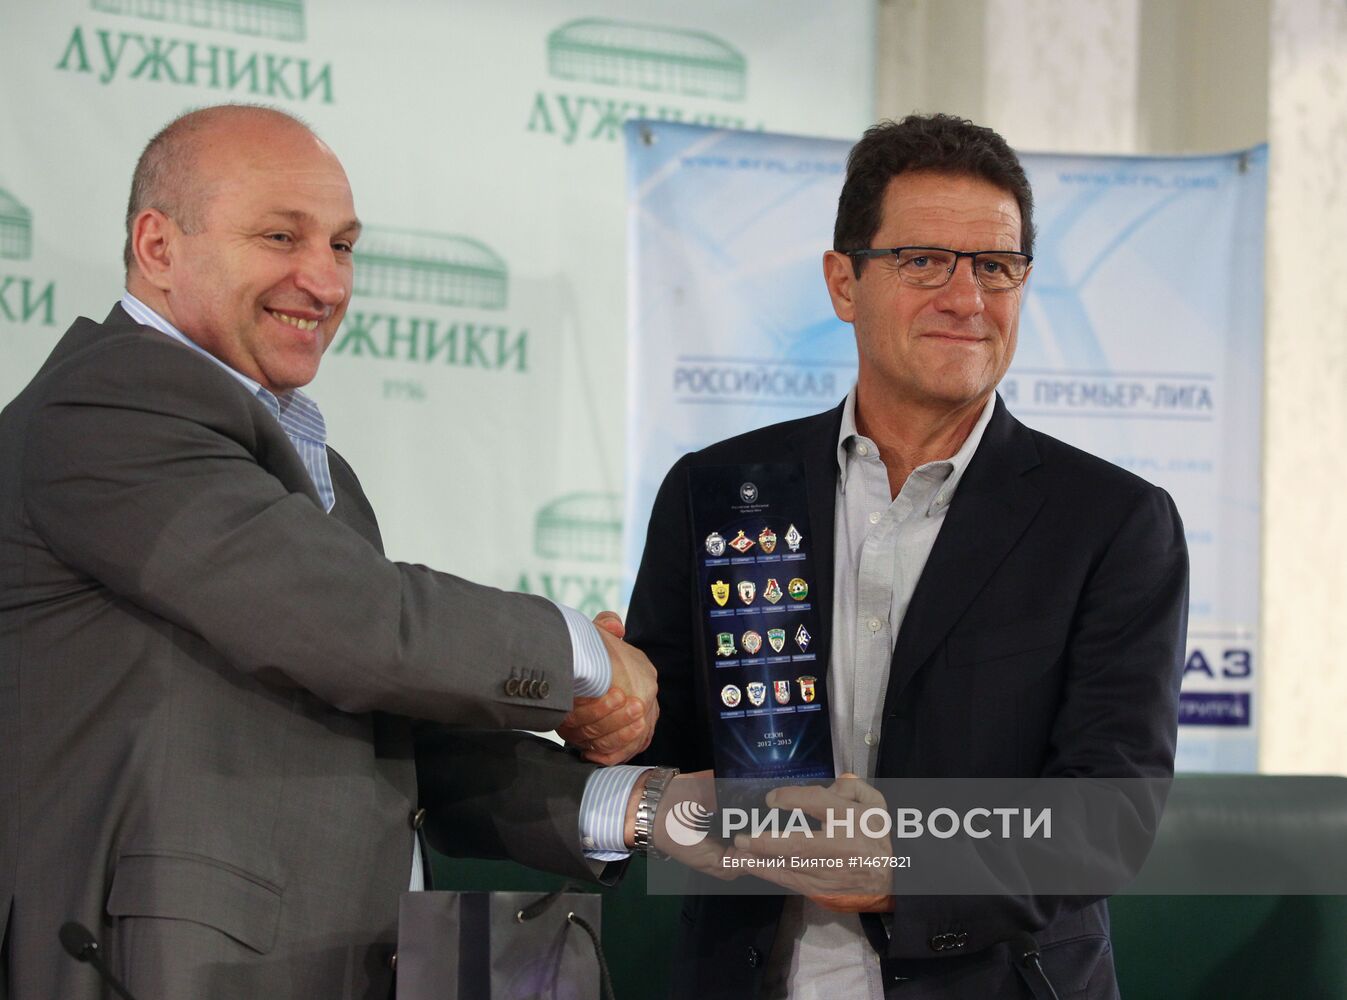 Пресс-конференция руководства Российской футбольной Премьер-Лиги